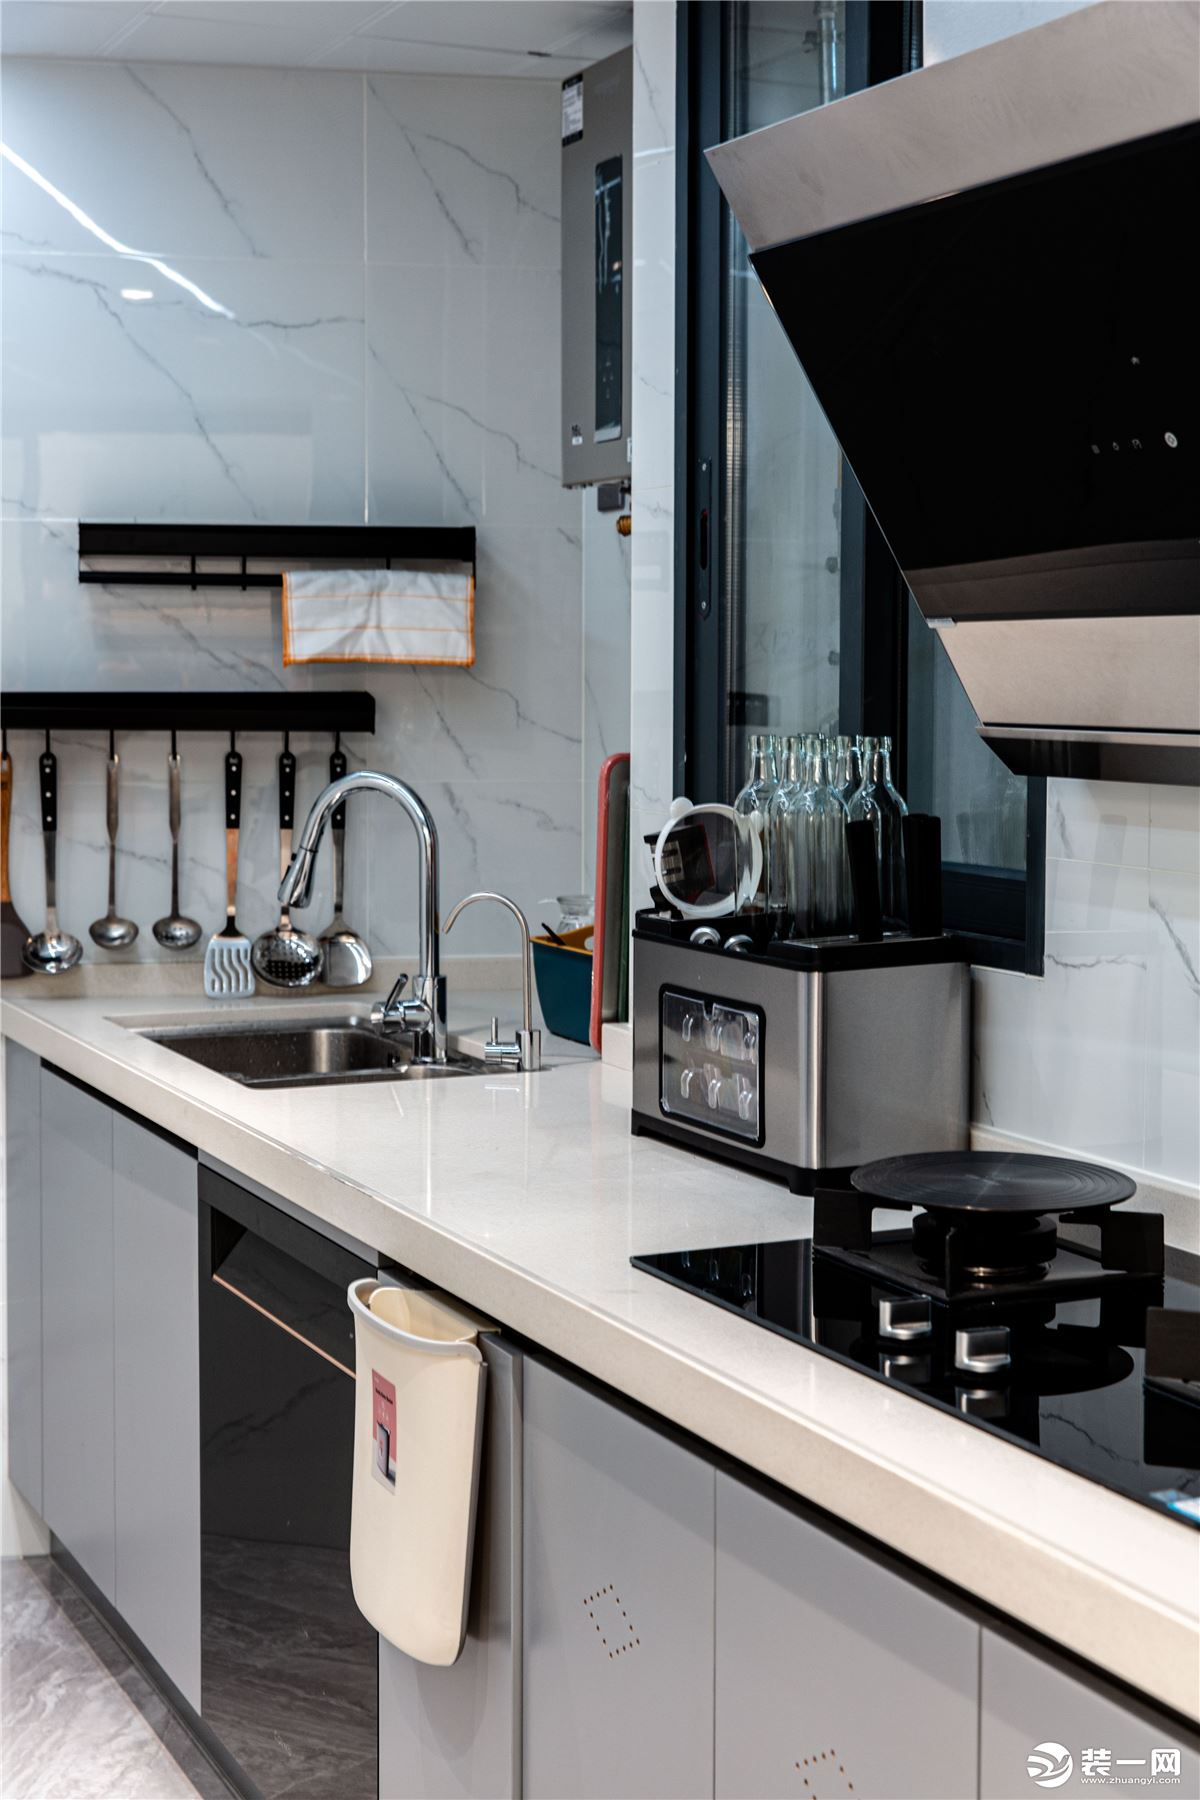 厨房日常使用概率较高，我们利用相邻两面墙体空间，使其呈L型布局，形成清洗—备菜—烹饪工作区。